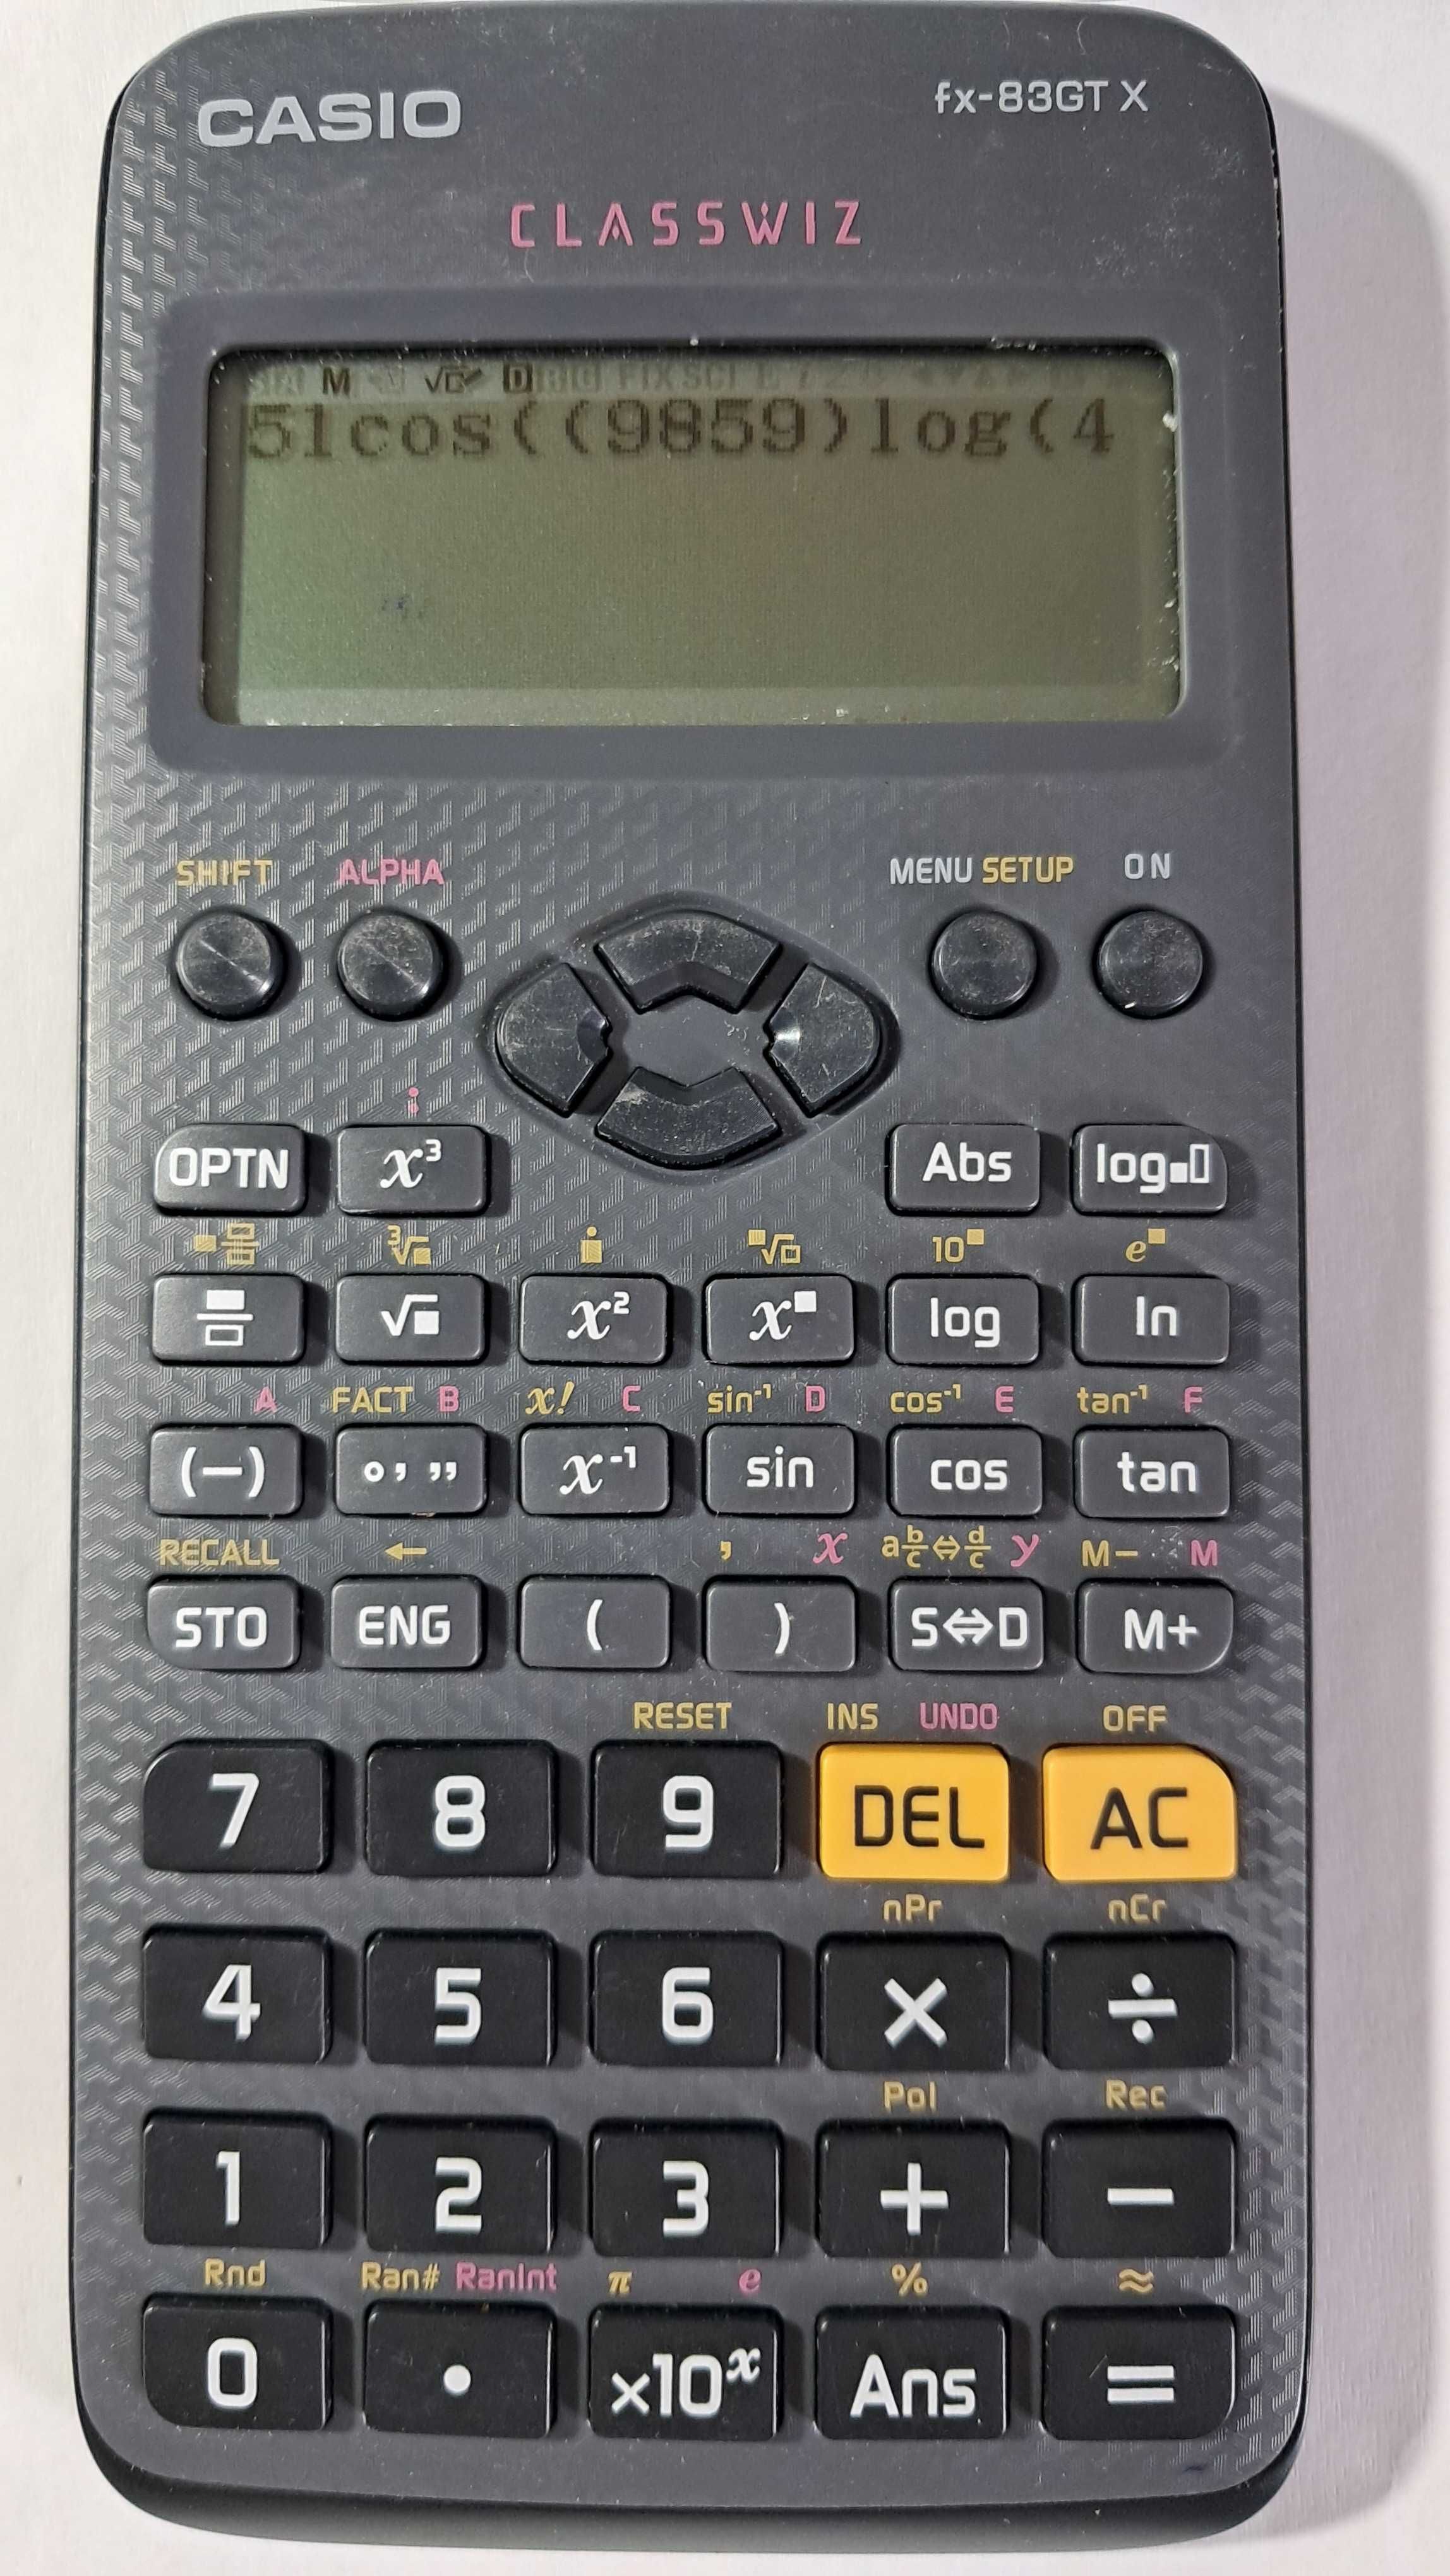 Casio kalkulator funkcyjny naukowy biurowy Classwiz fx-83GT X szary